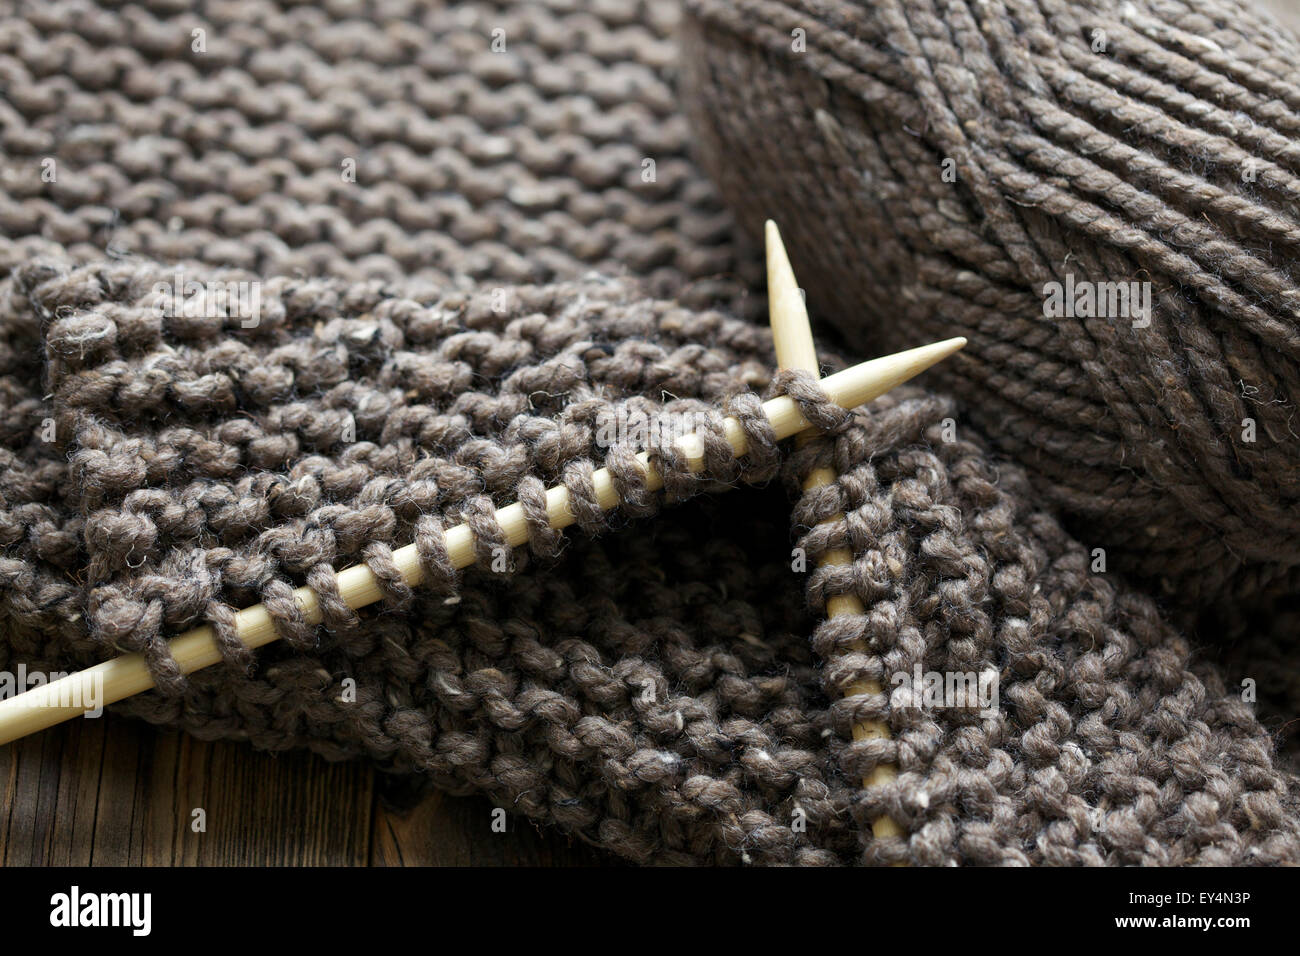 Image Gros plan des aiguilles à tricoter en bois brun et laines chunky Banque D'Images